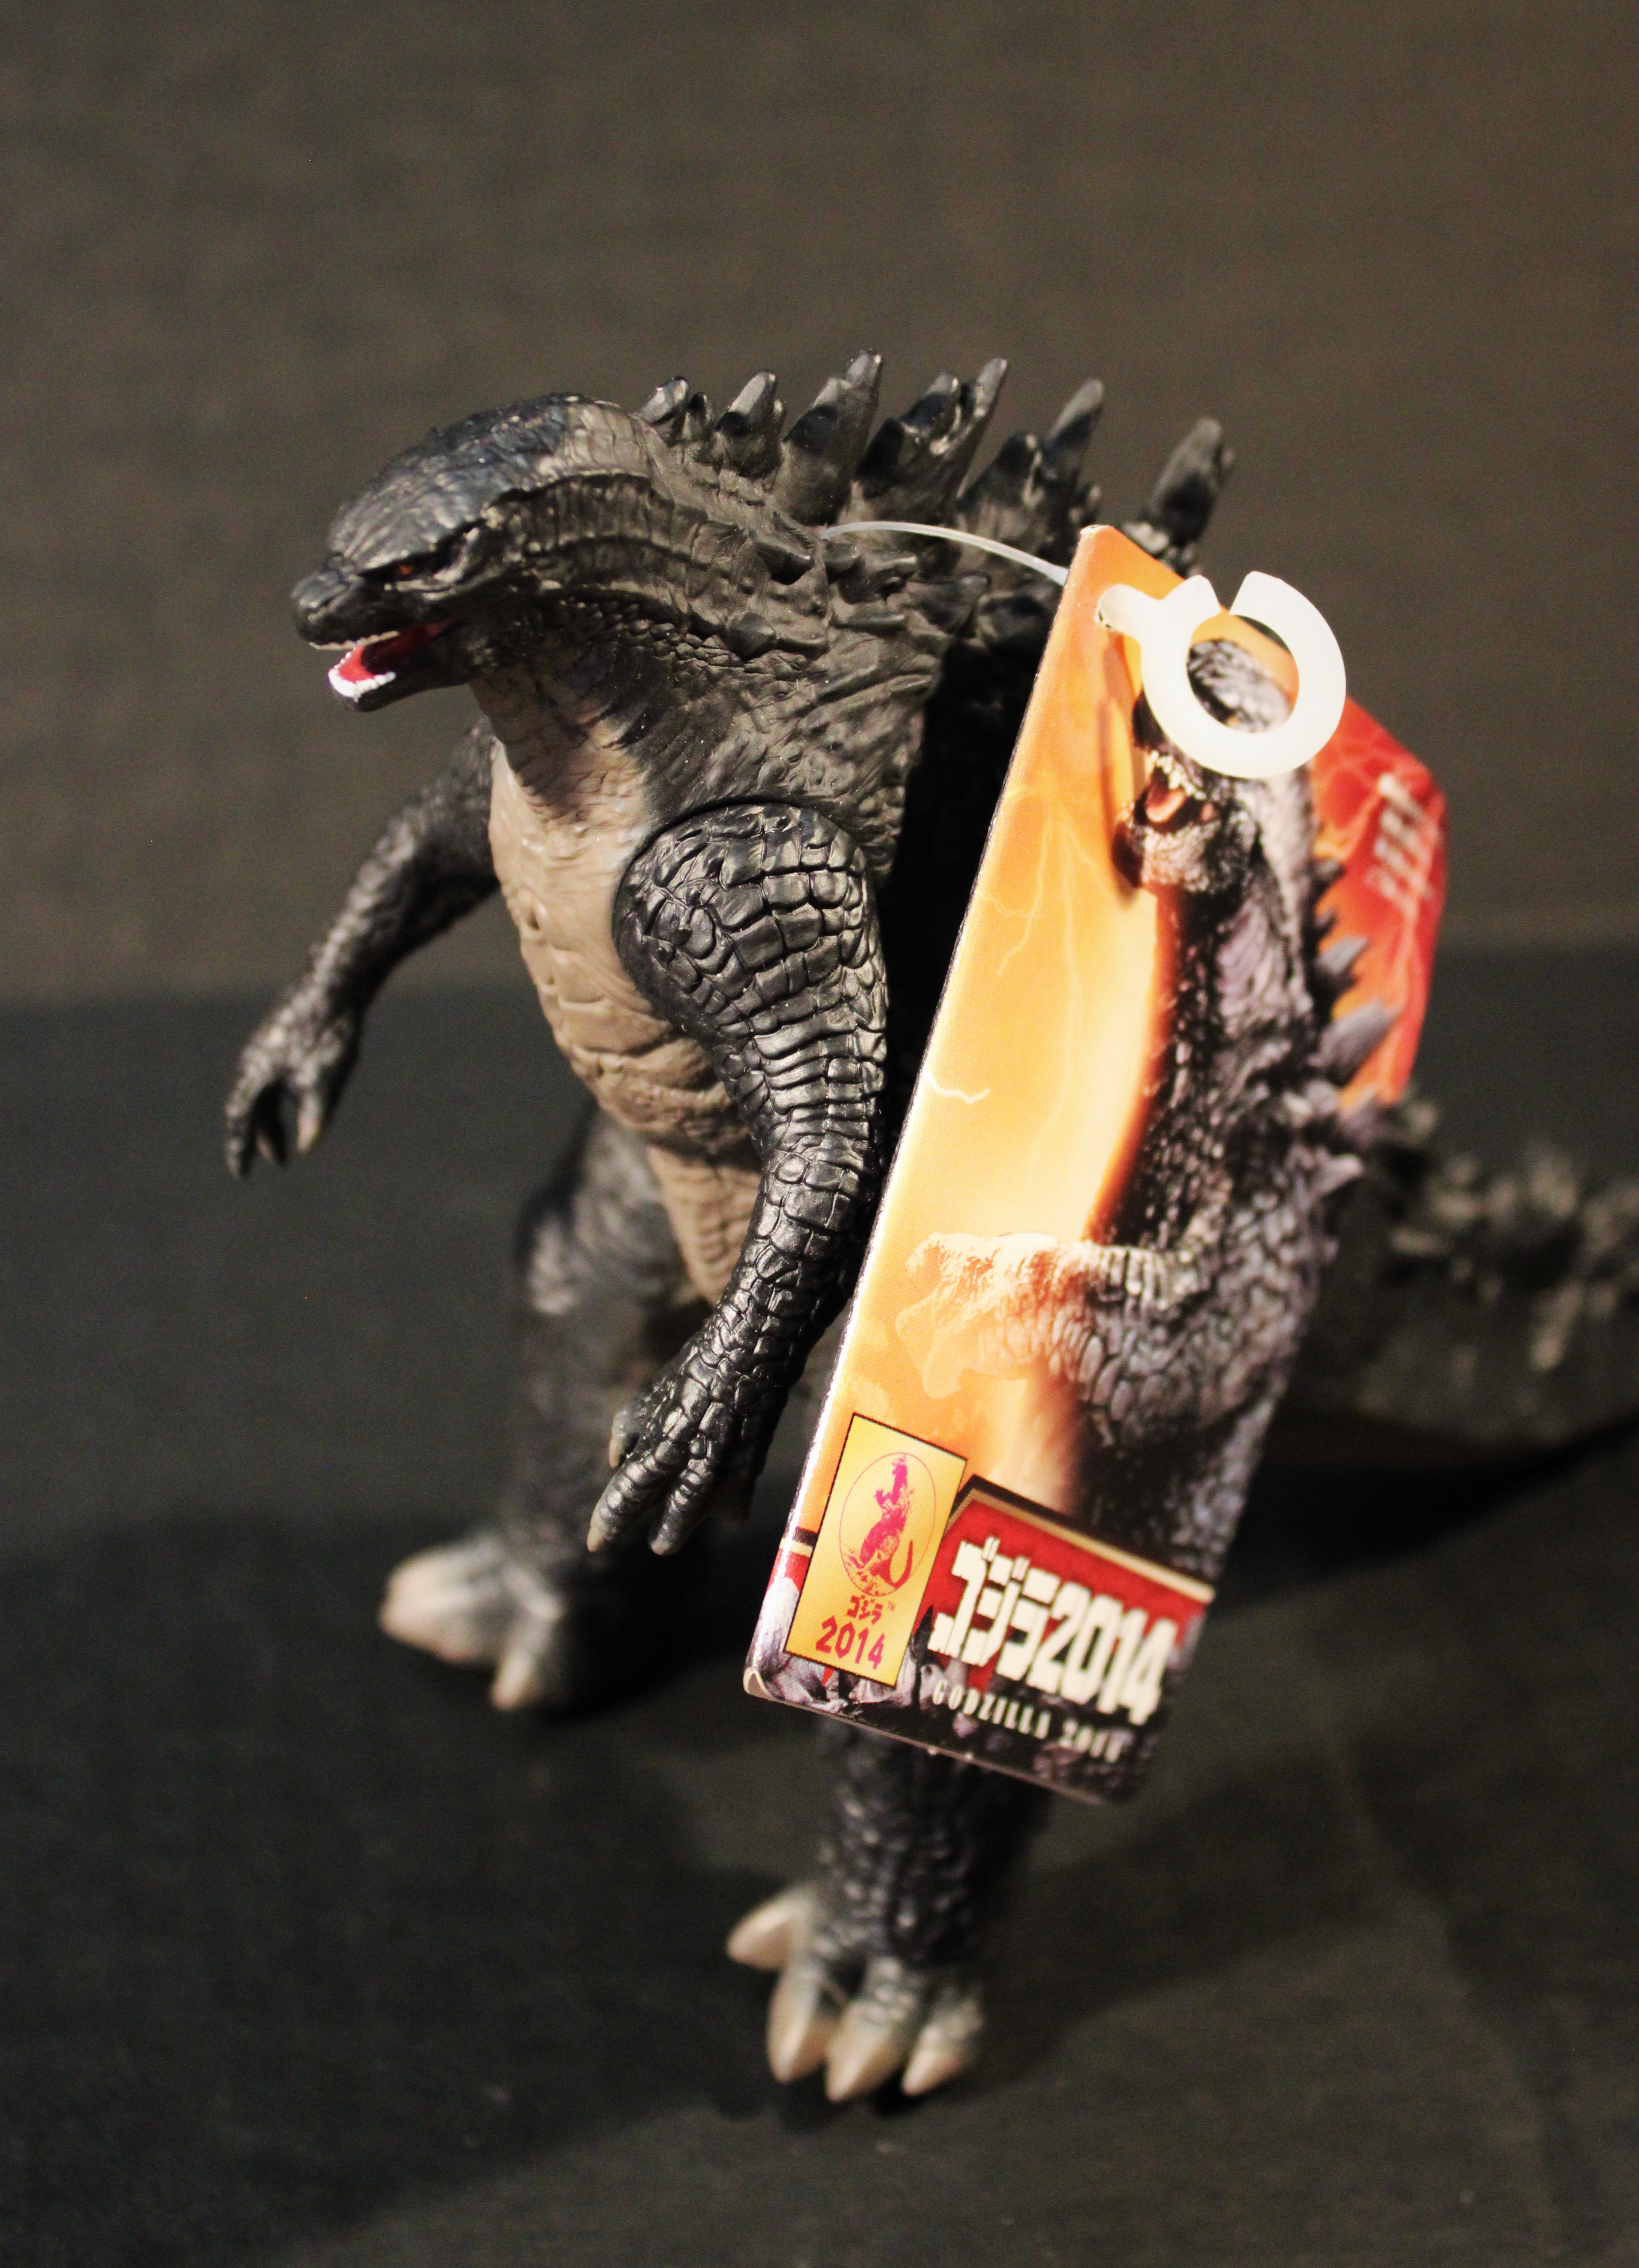 Bandai Godzilla 2014 6″ Movie Monster Series with Tag